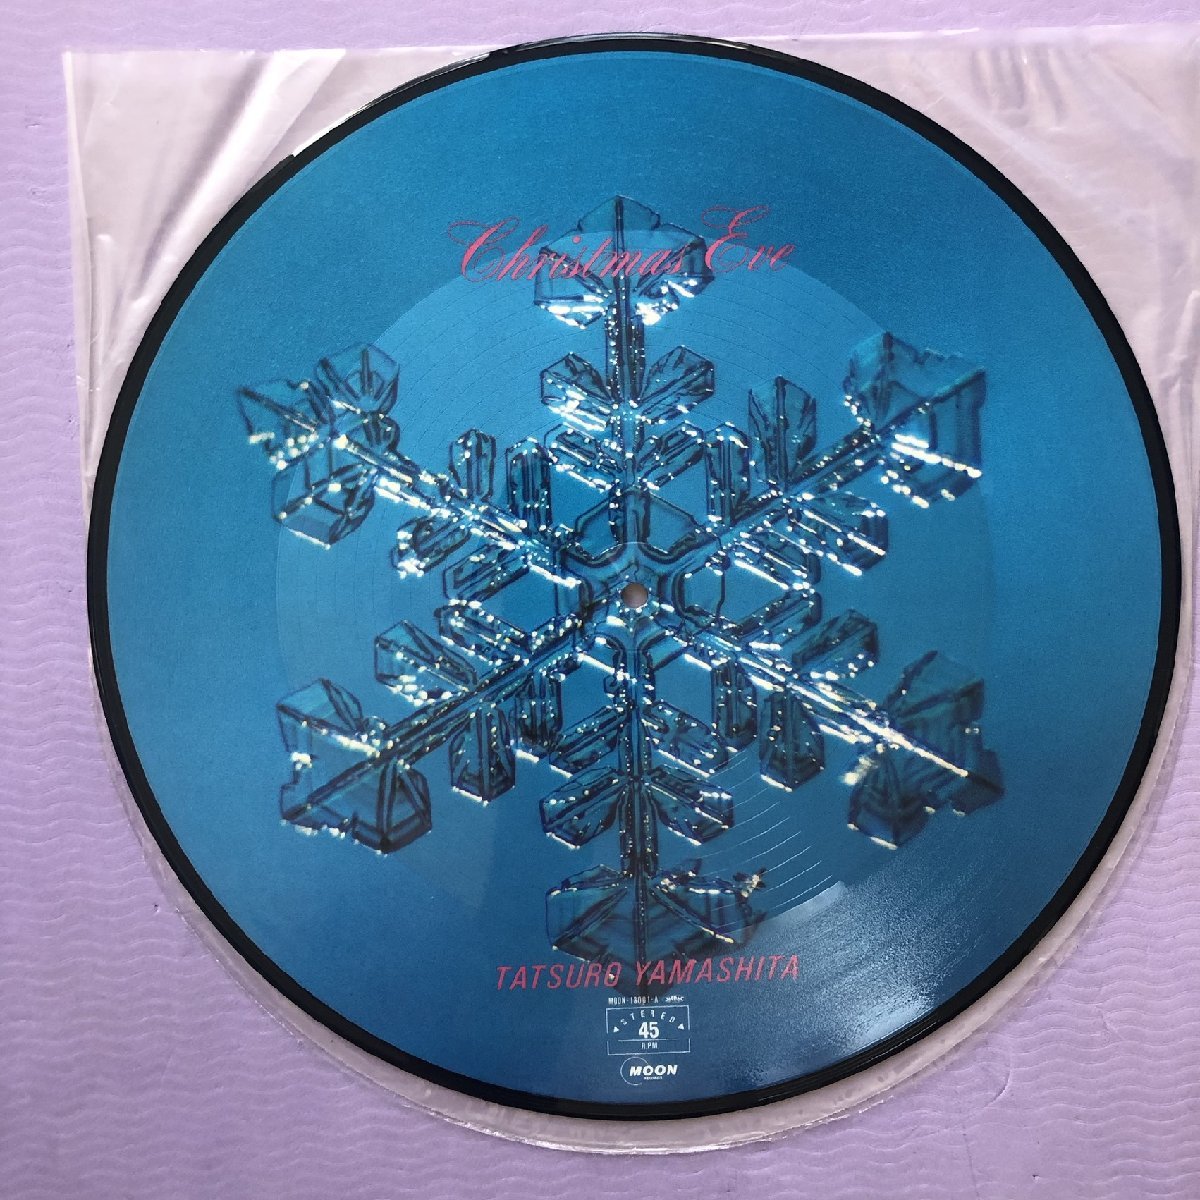 傷なし美盤 1983年 オリジナルリリース盤 山下達郎 12''EPピクチャーレコード Christmas Eve / White Christmas 帯付 限定版_画像9